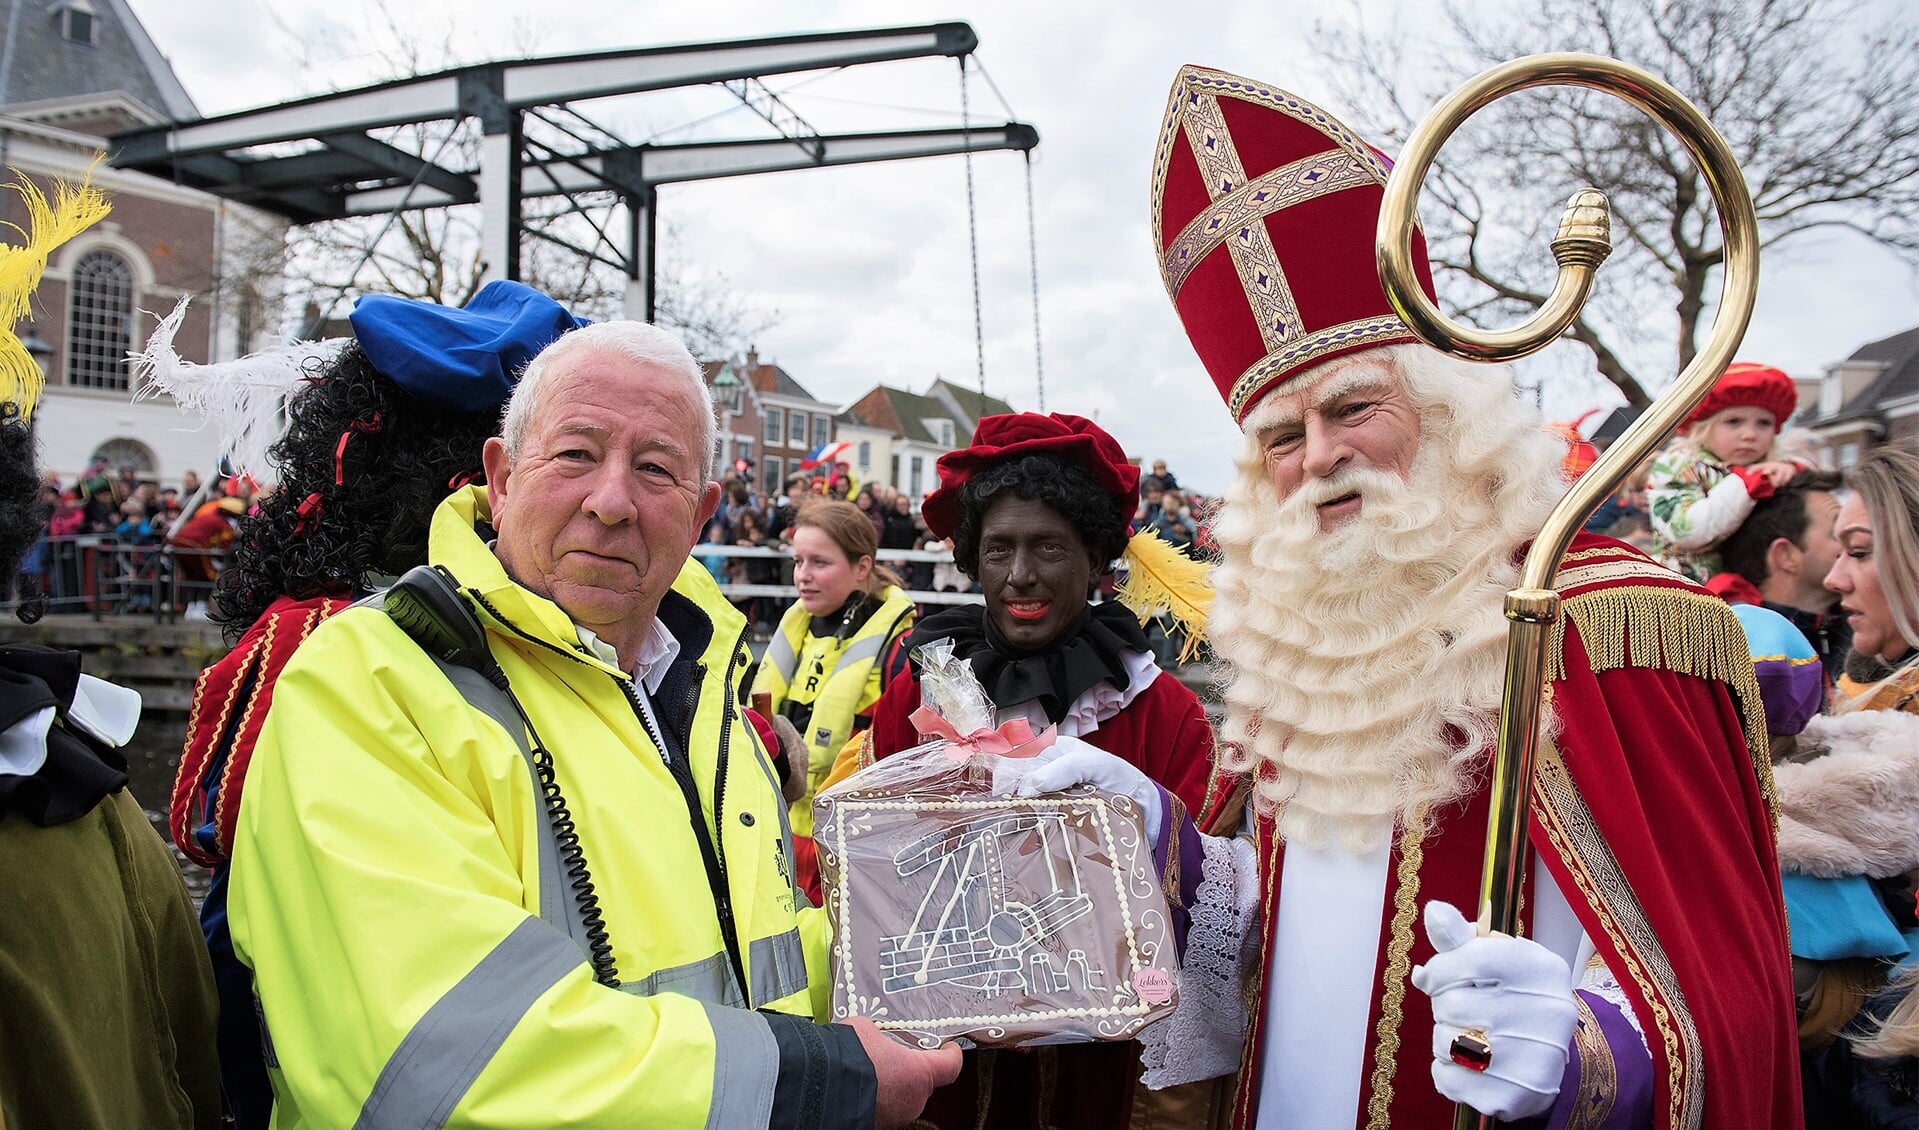 De Sint had iets lekkers meegebracht voor Jan, namelijk een chocolade tableau met een ophaalbrug erop (foto: Michel Groen).